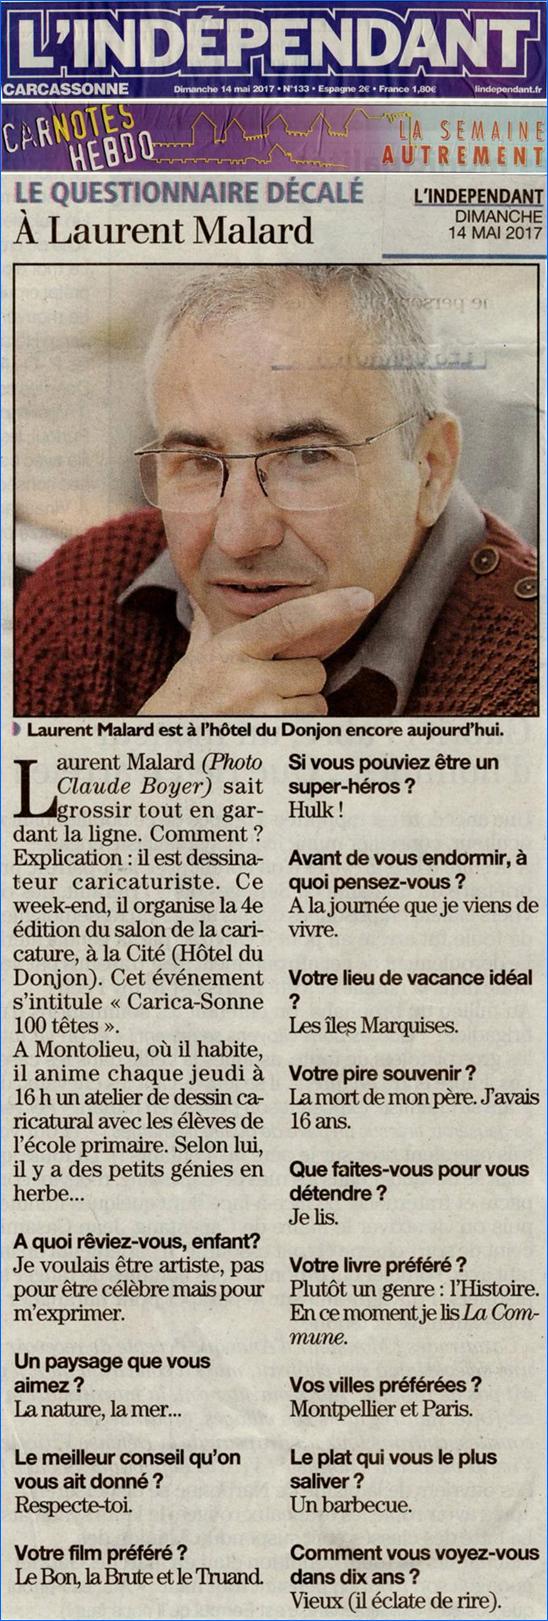 L'Indépendant 
Dimanche 14 mai 2017
Le Questionnaire Décalé à Laurent Malard